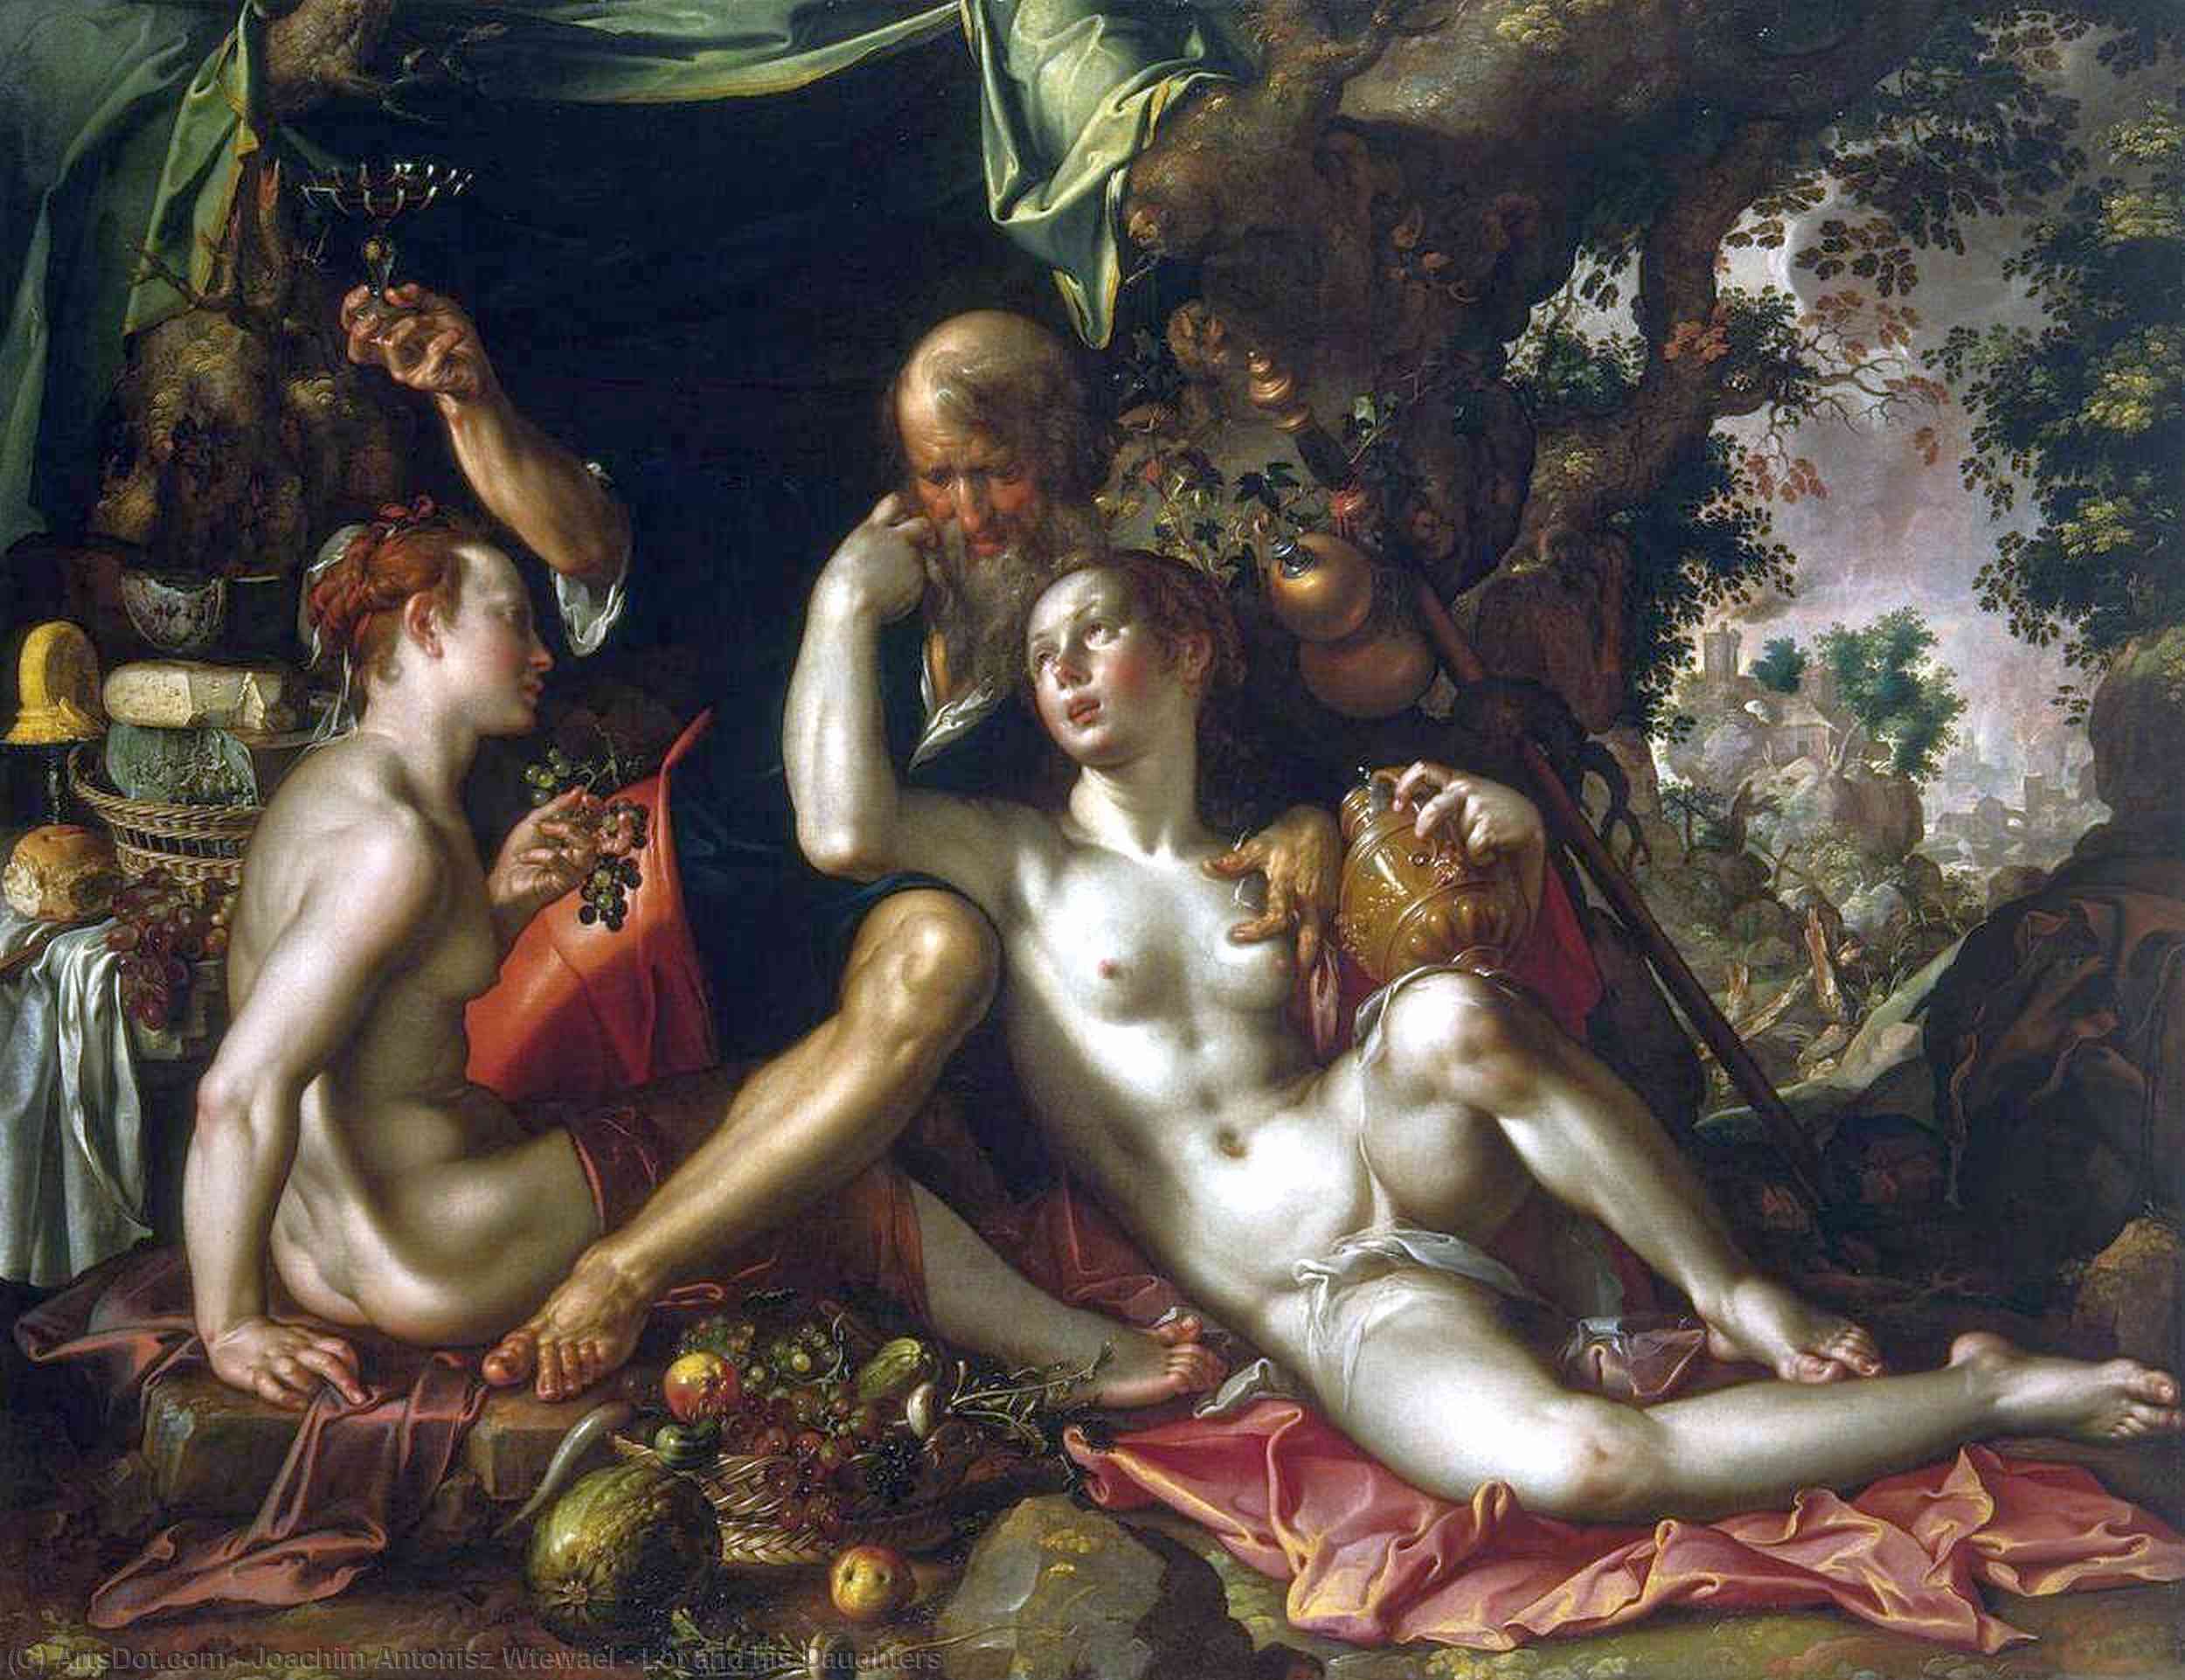 WikiOO.org - Encyclopedia of Fine Arts - Maleri, Artwork Joachim Antonisz Wtewael - Lot and his Daughters